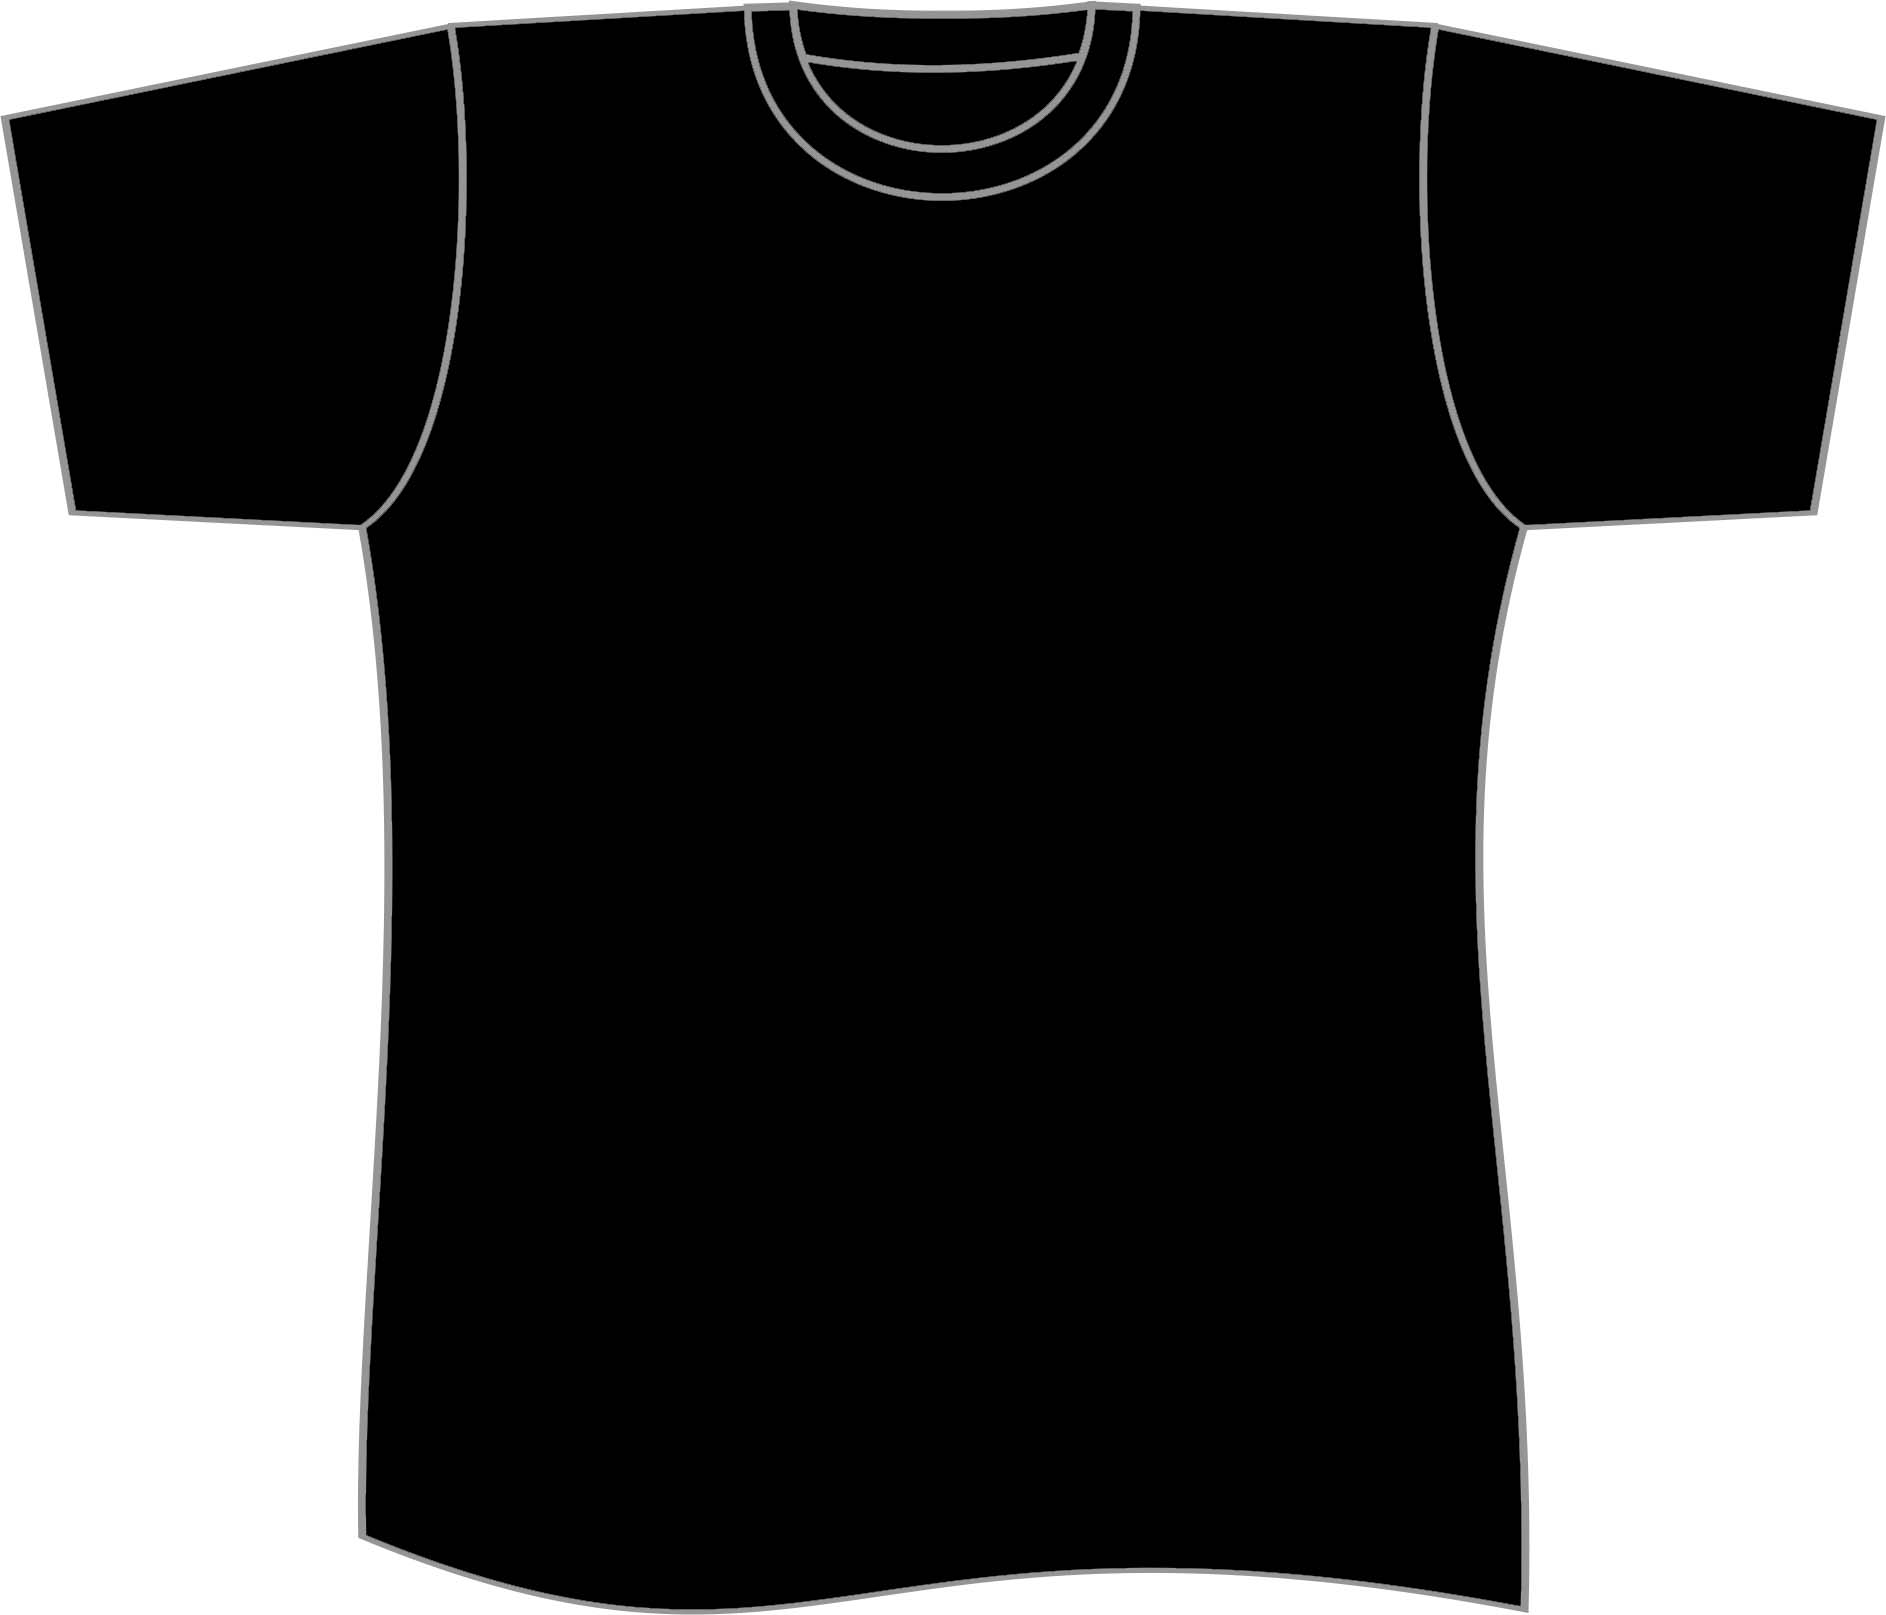 Black T Shirt Vector - ClipArt Best